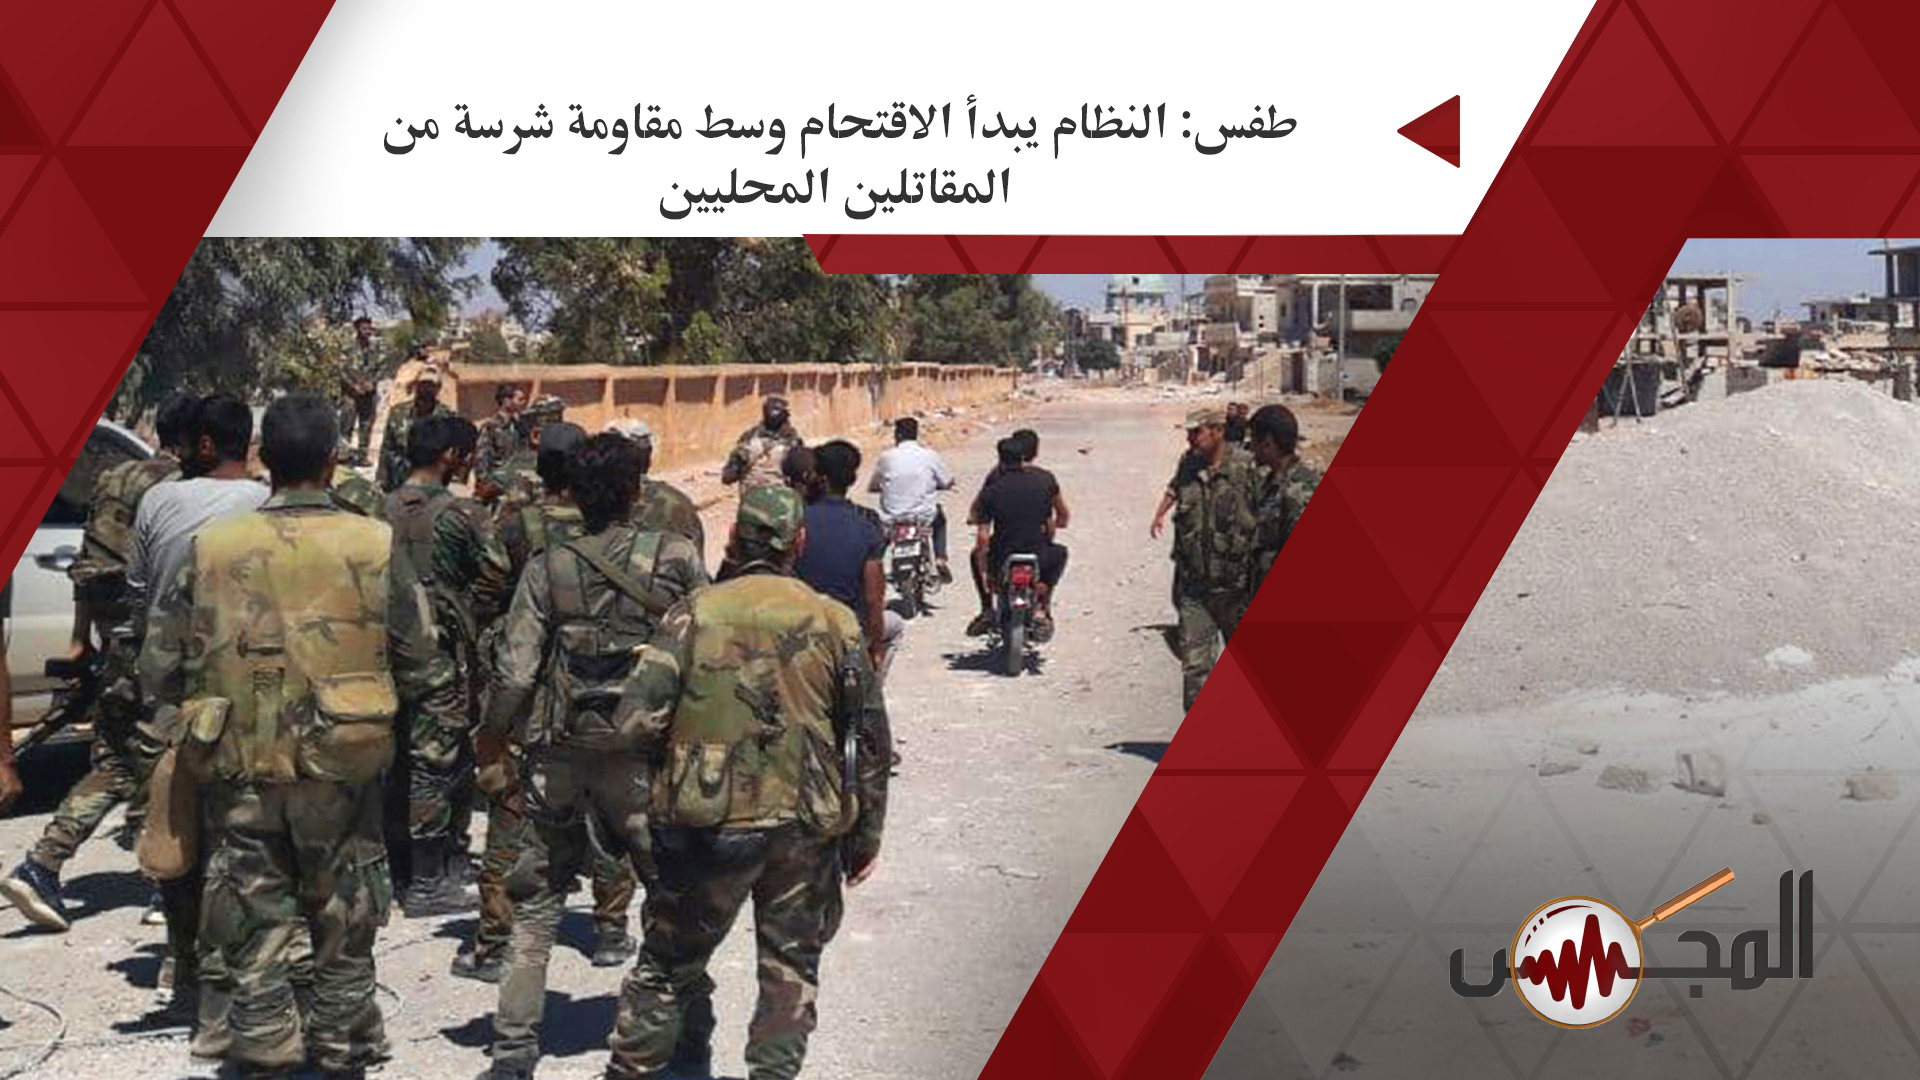 طفس: النظام يبدأ الاقتحام وسط مقاومة شرسة من المقاتلين المحليين